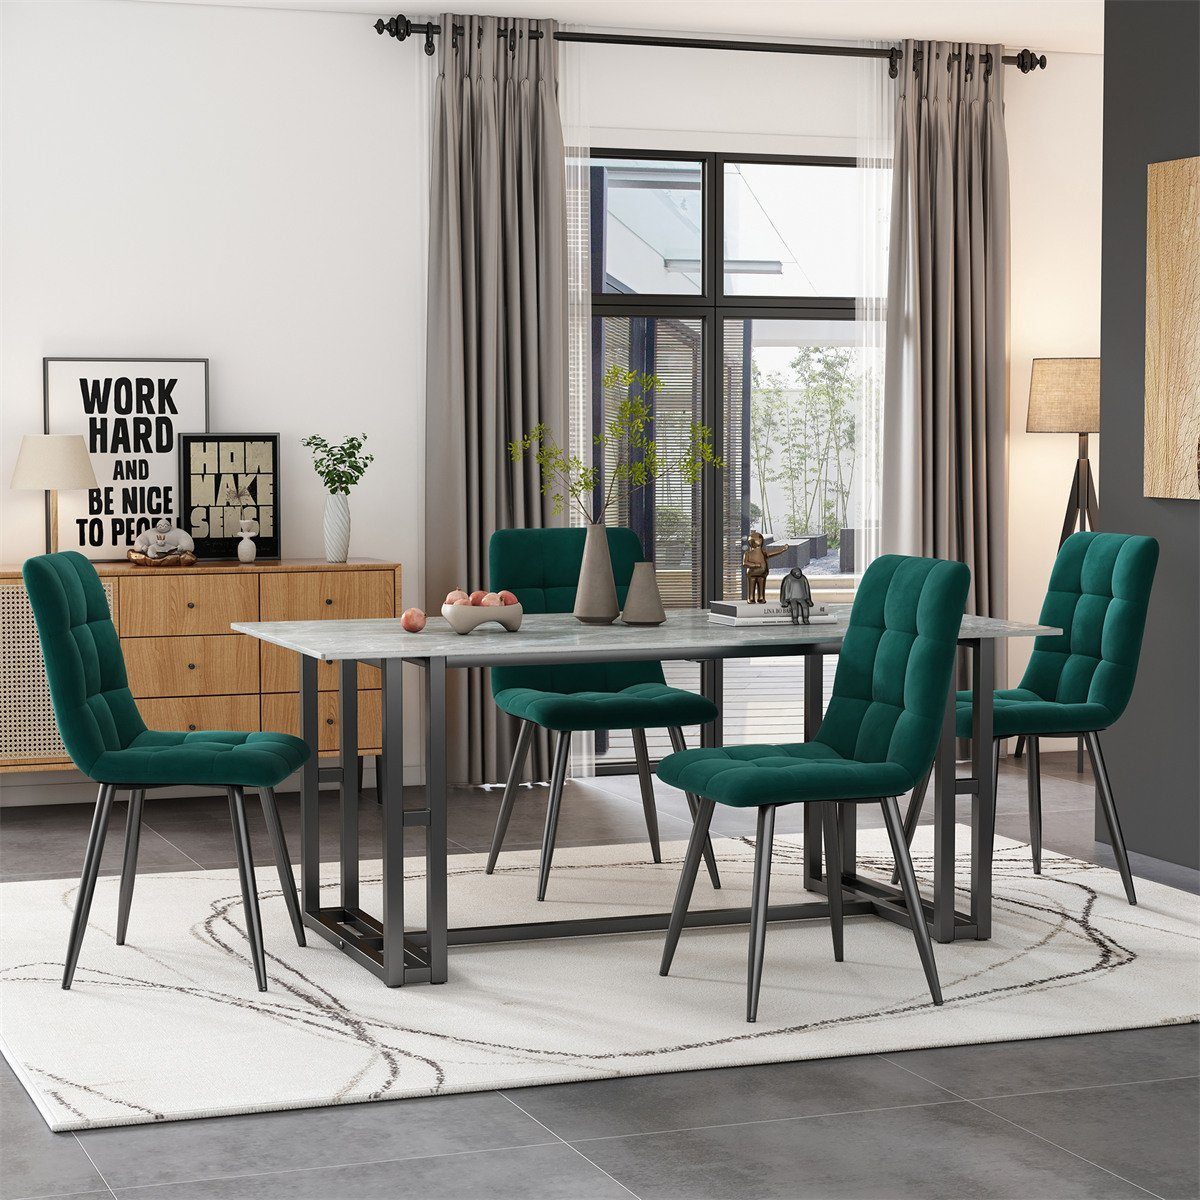 XDeer Esszimmerstuhl 4er Set Esszimmerstühle,Polsterstuhl Sitzfläche mit Metall,Leicht Samt aus Gruen Gestell zu Rückenlehne, montieren Küchenstuhl aus